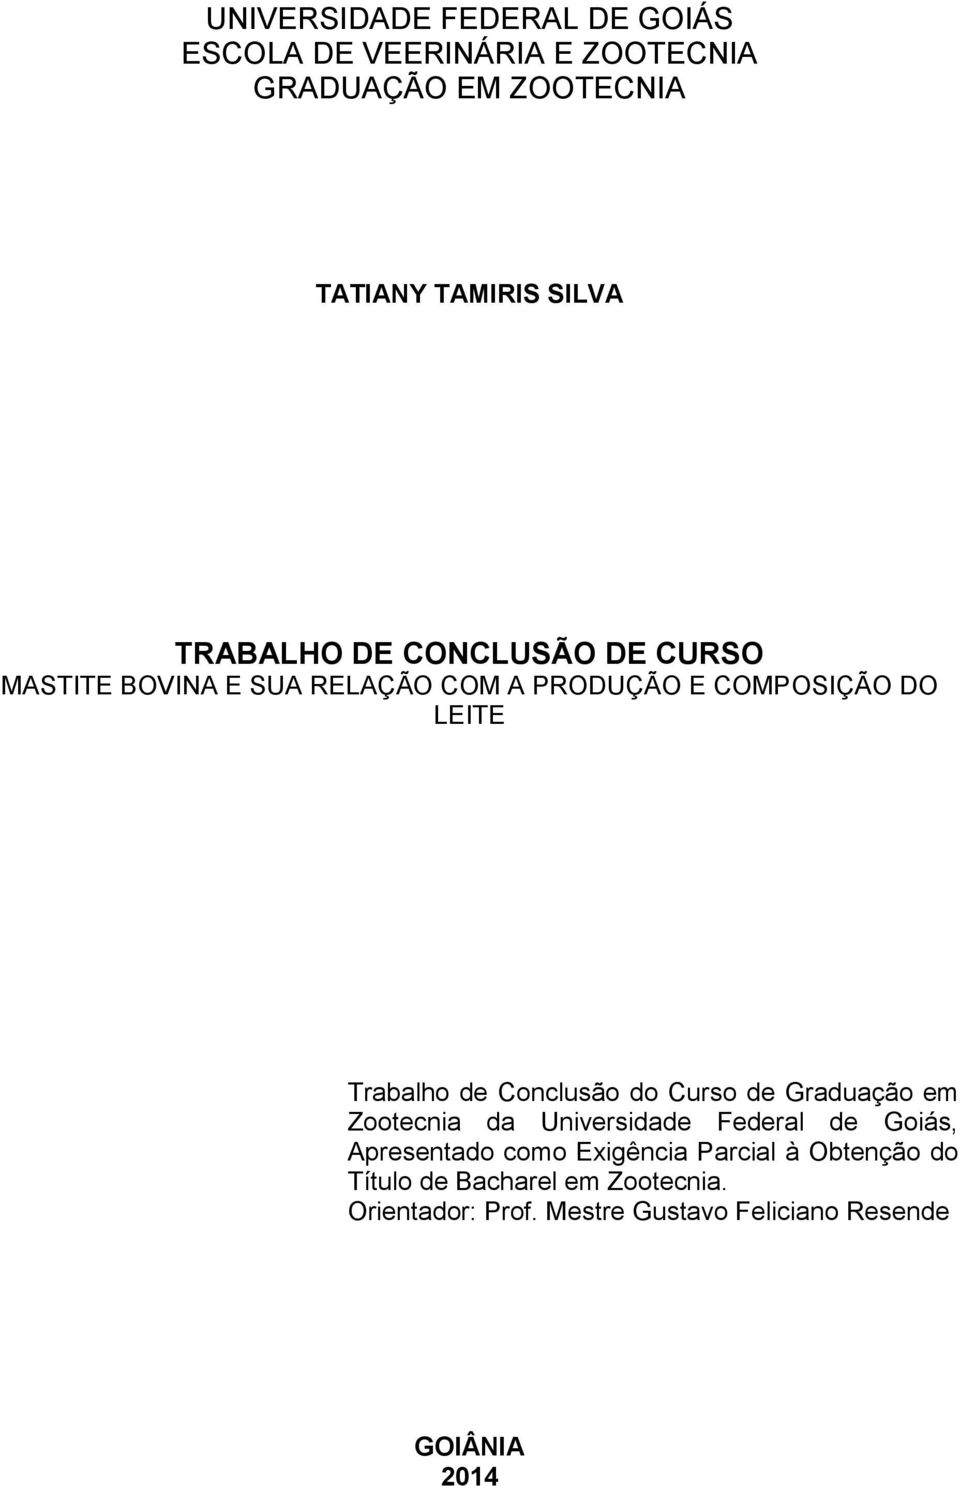 Conclusão do Curso de Graduação em Zootecnia da Universidade Federal de Goiás, Apresentado como Exigência